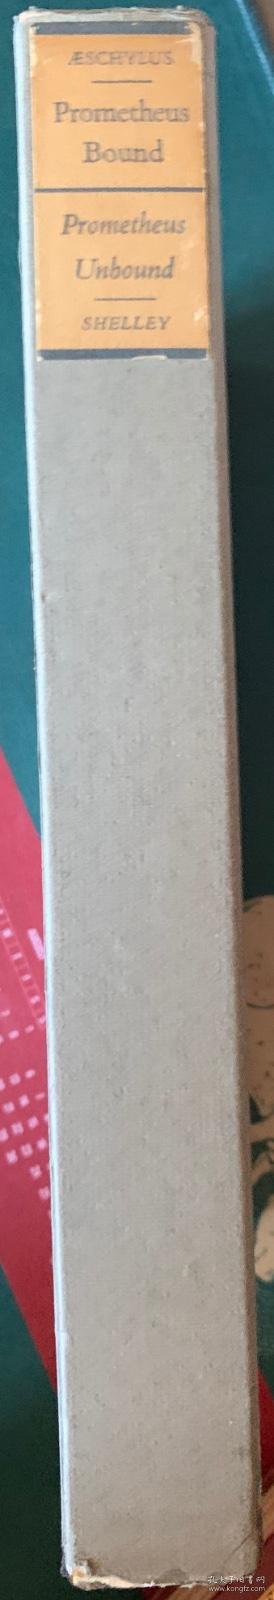 古希腊埃斯库罗斯最具代表性的悲剧： 被缚的普罗米修斯   雪莱的长诗：解放的普罗米修斯  二书合一本   布面精装  书脊烫金   限量俱乐部成员限量版1500册  之第 377册  精美插图  超大开本 木纹纸你印刷   有套盒  套盒有破损  已经粘好